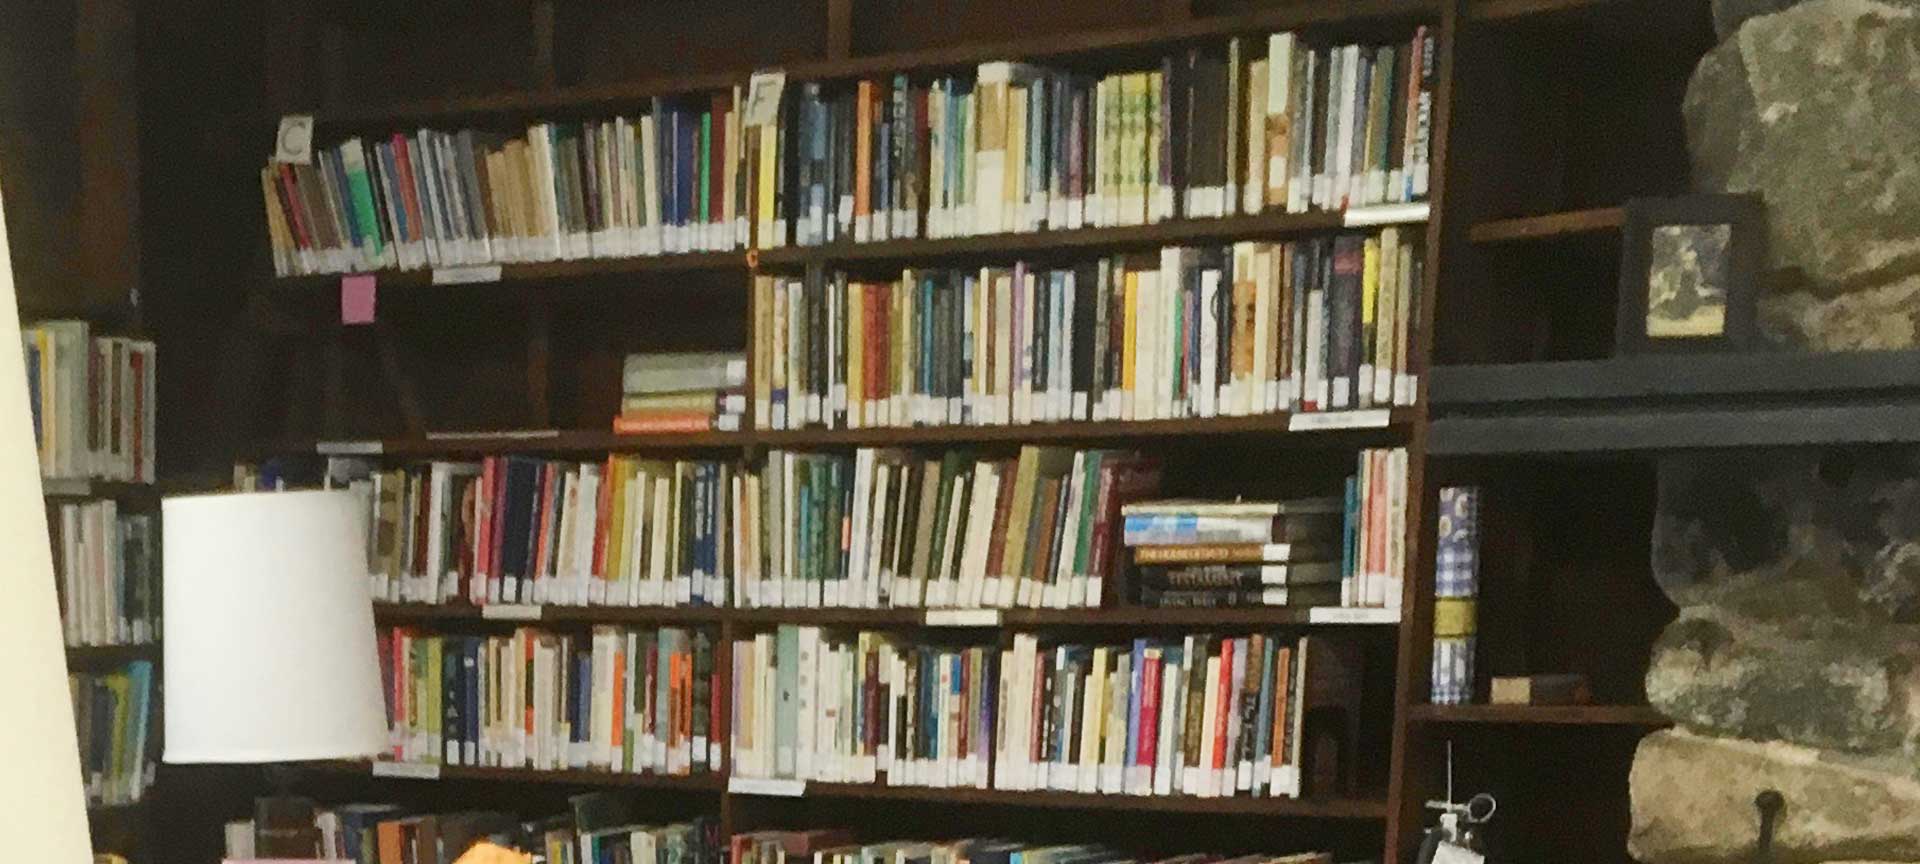  photo of big shelves full of books 